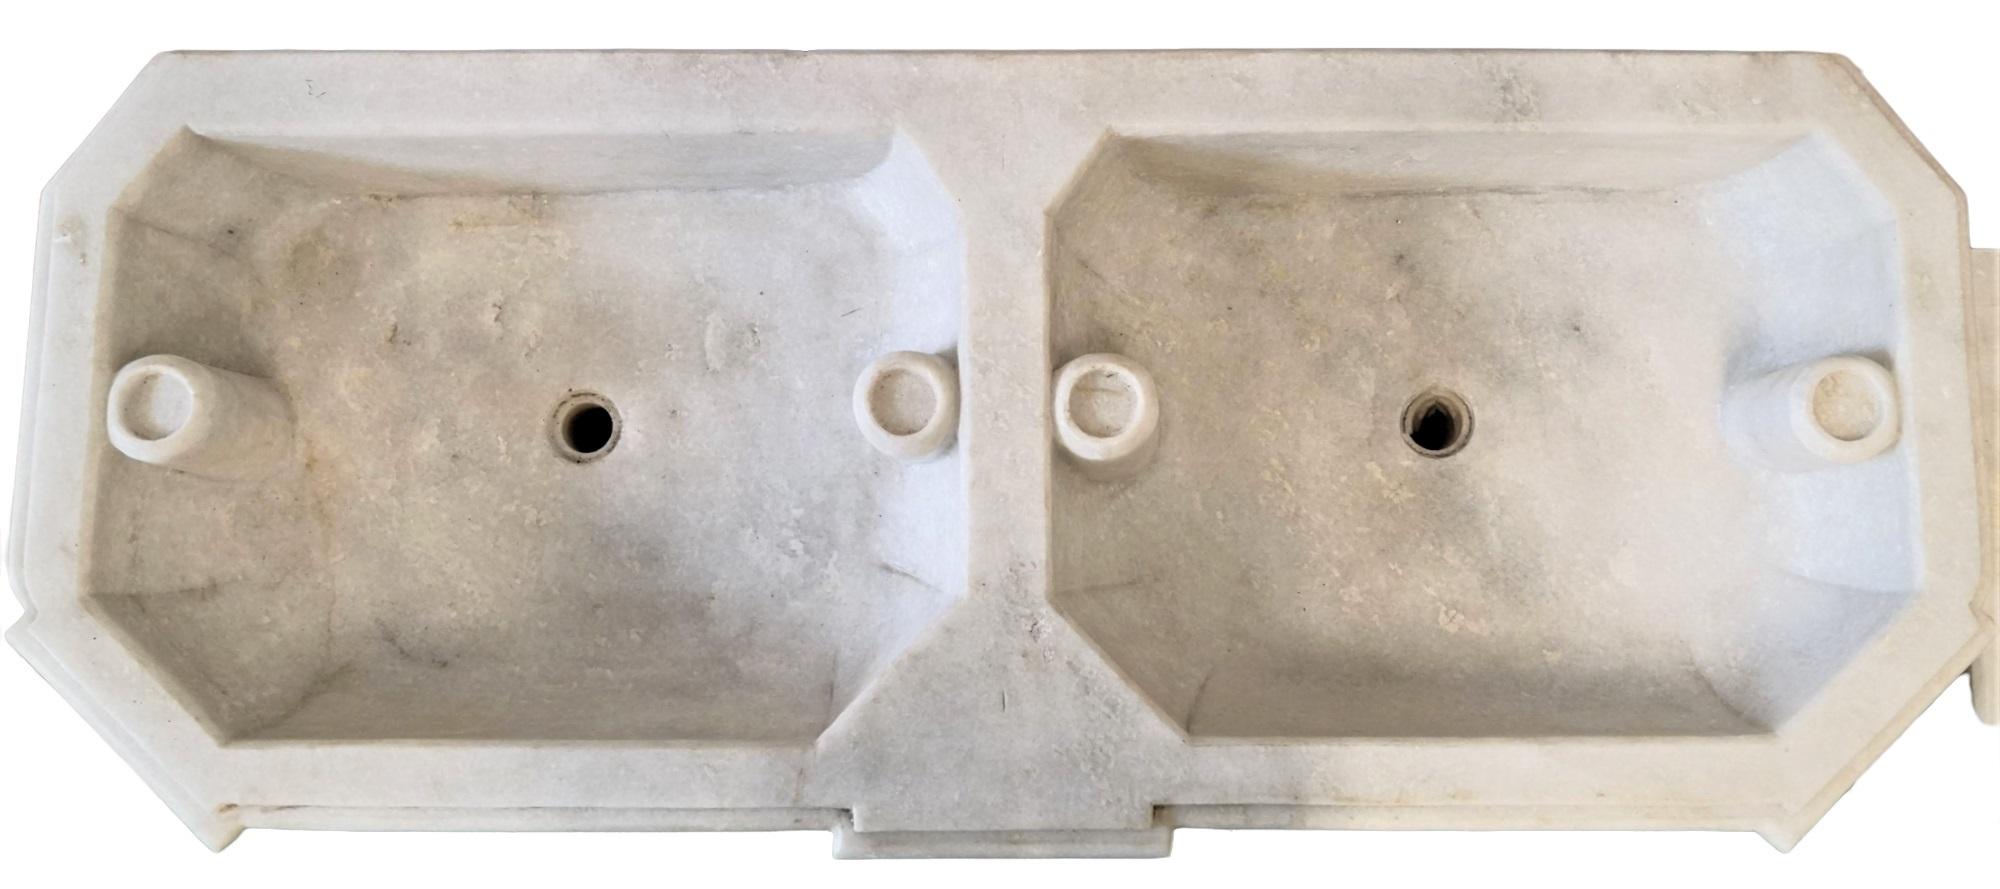 Carrara Marmor Doppelspülbecken für die Küche (Klassisch-griechisch) im Angebot